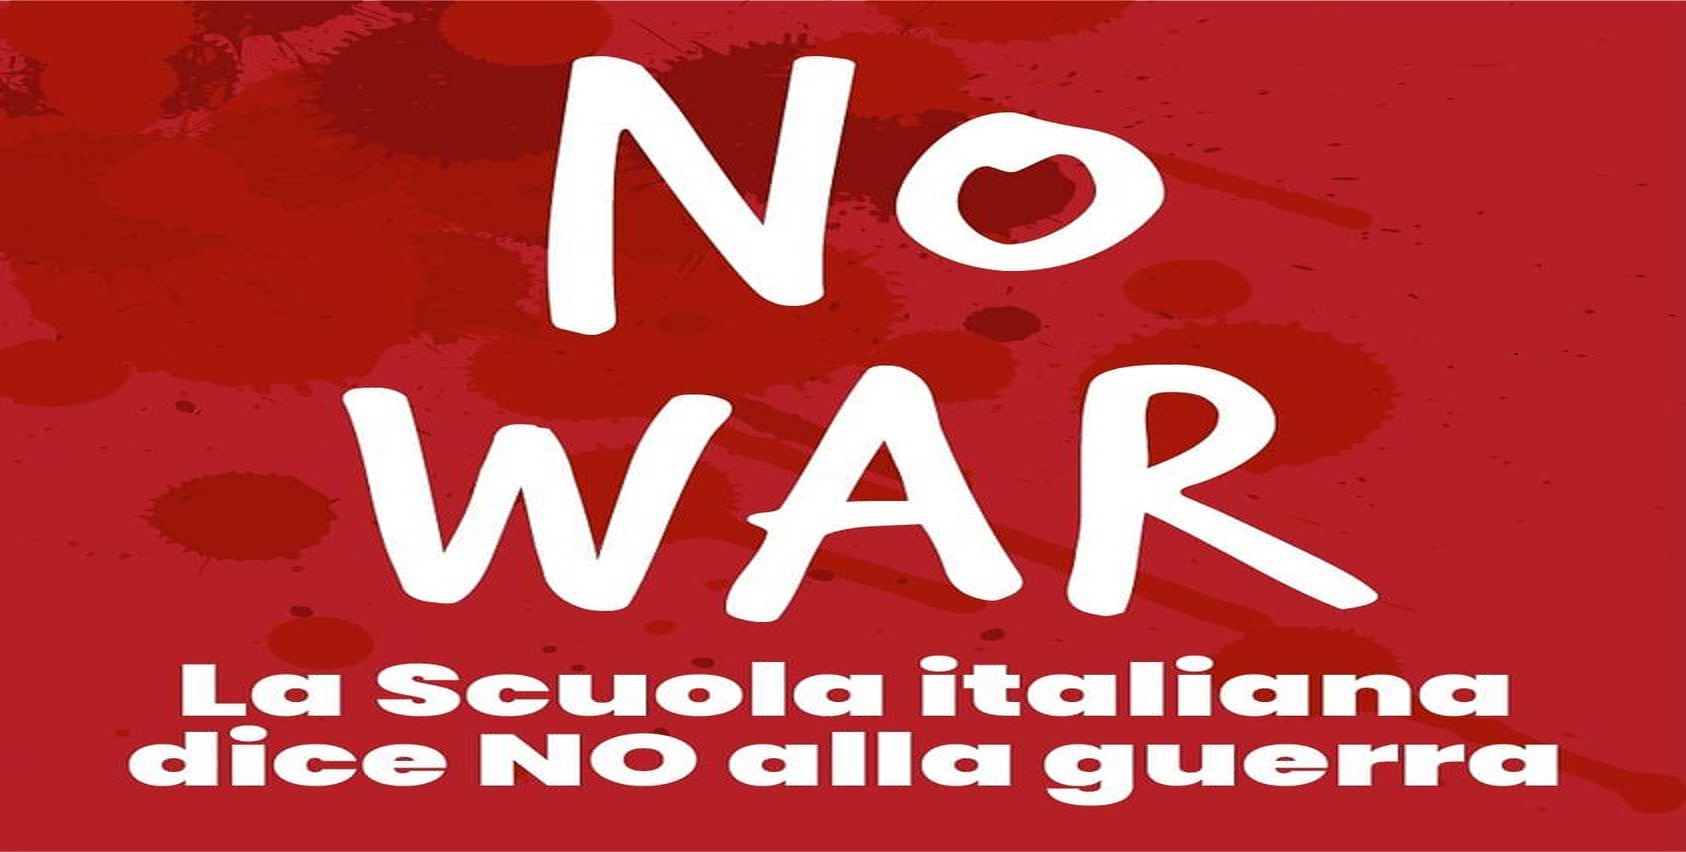 NO WAR – La Scuola italiana dice NO alla guerra –